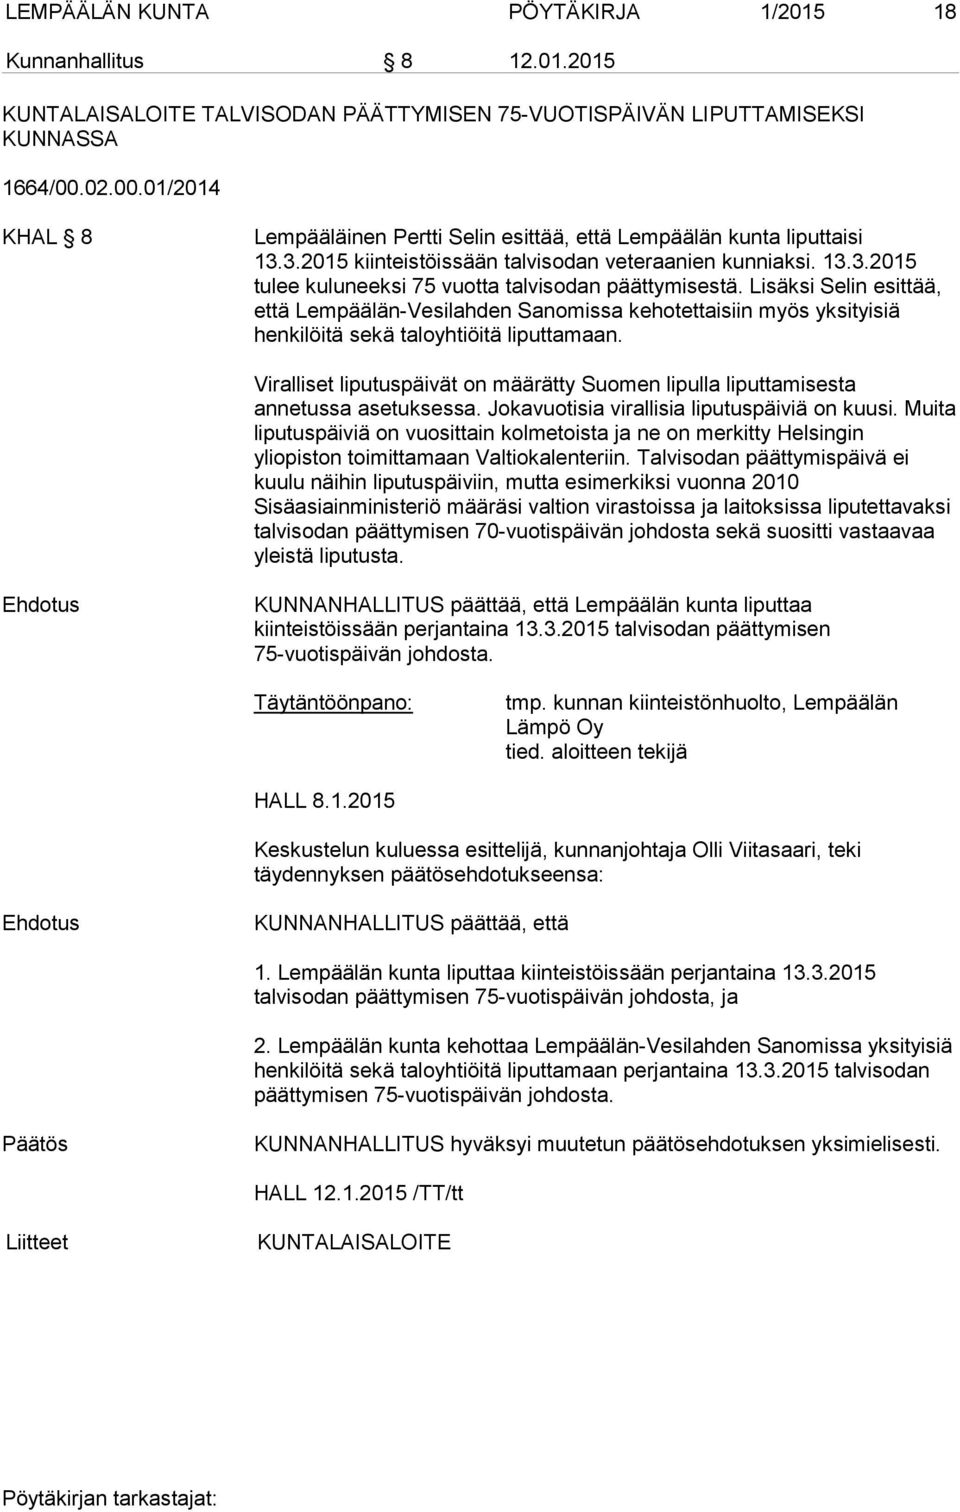 Lisäksi Selin esittää, että Lempäälän-Vesilahden Sanomissa kehotettaisiin myös yksityisiä henkilöitä sekä taloyhtiöitä liputtamaan.